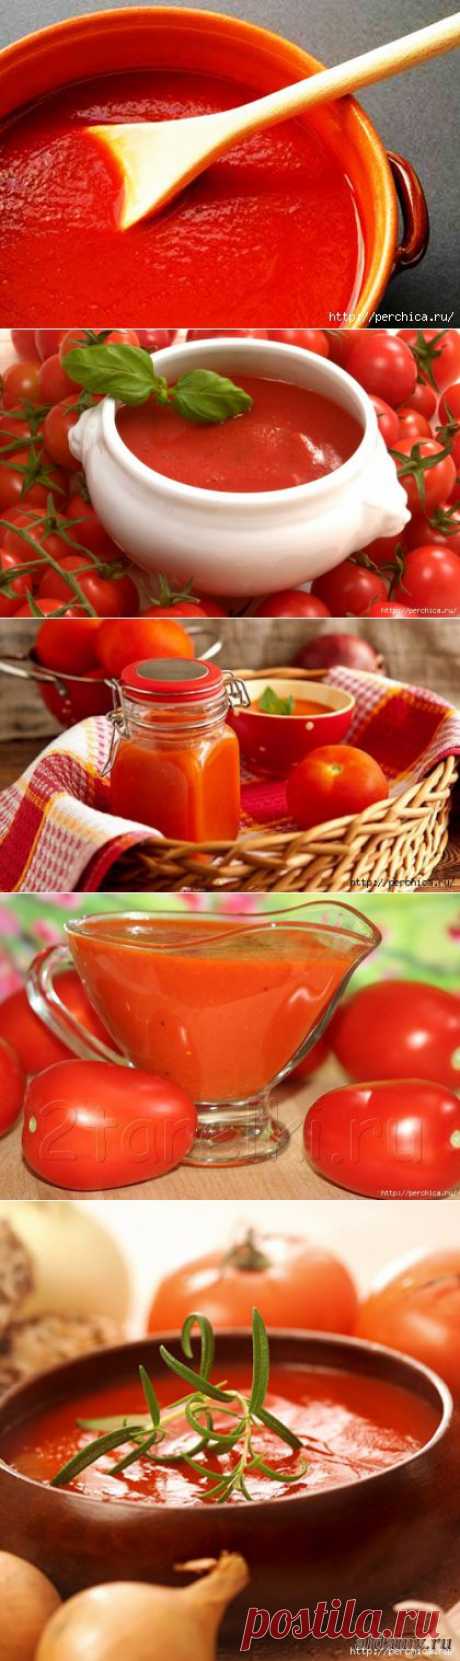 Домашний натуральный кетчуп на любой вкус - подборка супер рецептов.